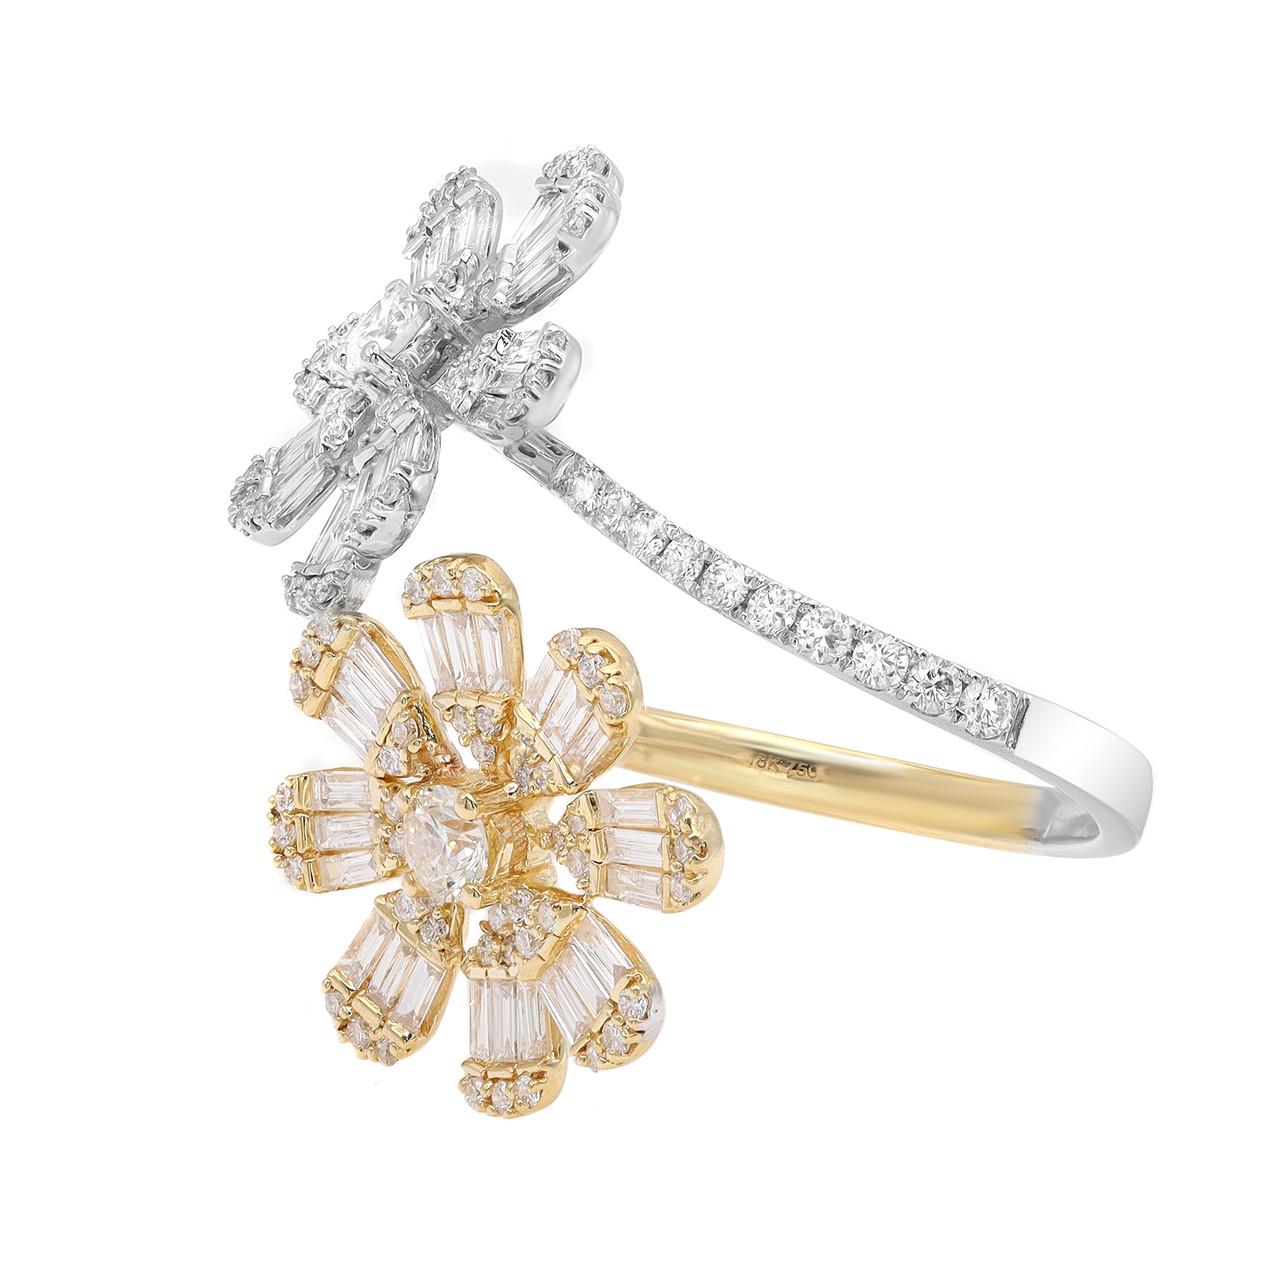 Whiting, l'époustouflante bague fleur pavée de 1,56 diamant en or blanc et jaune 18 carats, un chef-d'œuvre d'Elizabeth Fine Jewelry. Entrez dans un monde d'artisanat exquis et de design primé, où chaque pièce est méticuleusement fabriquée à la main